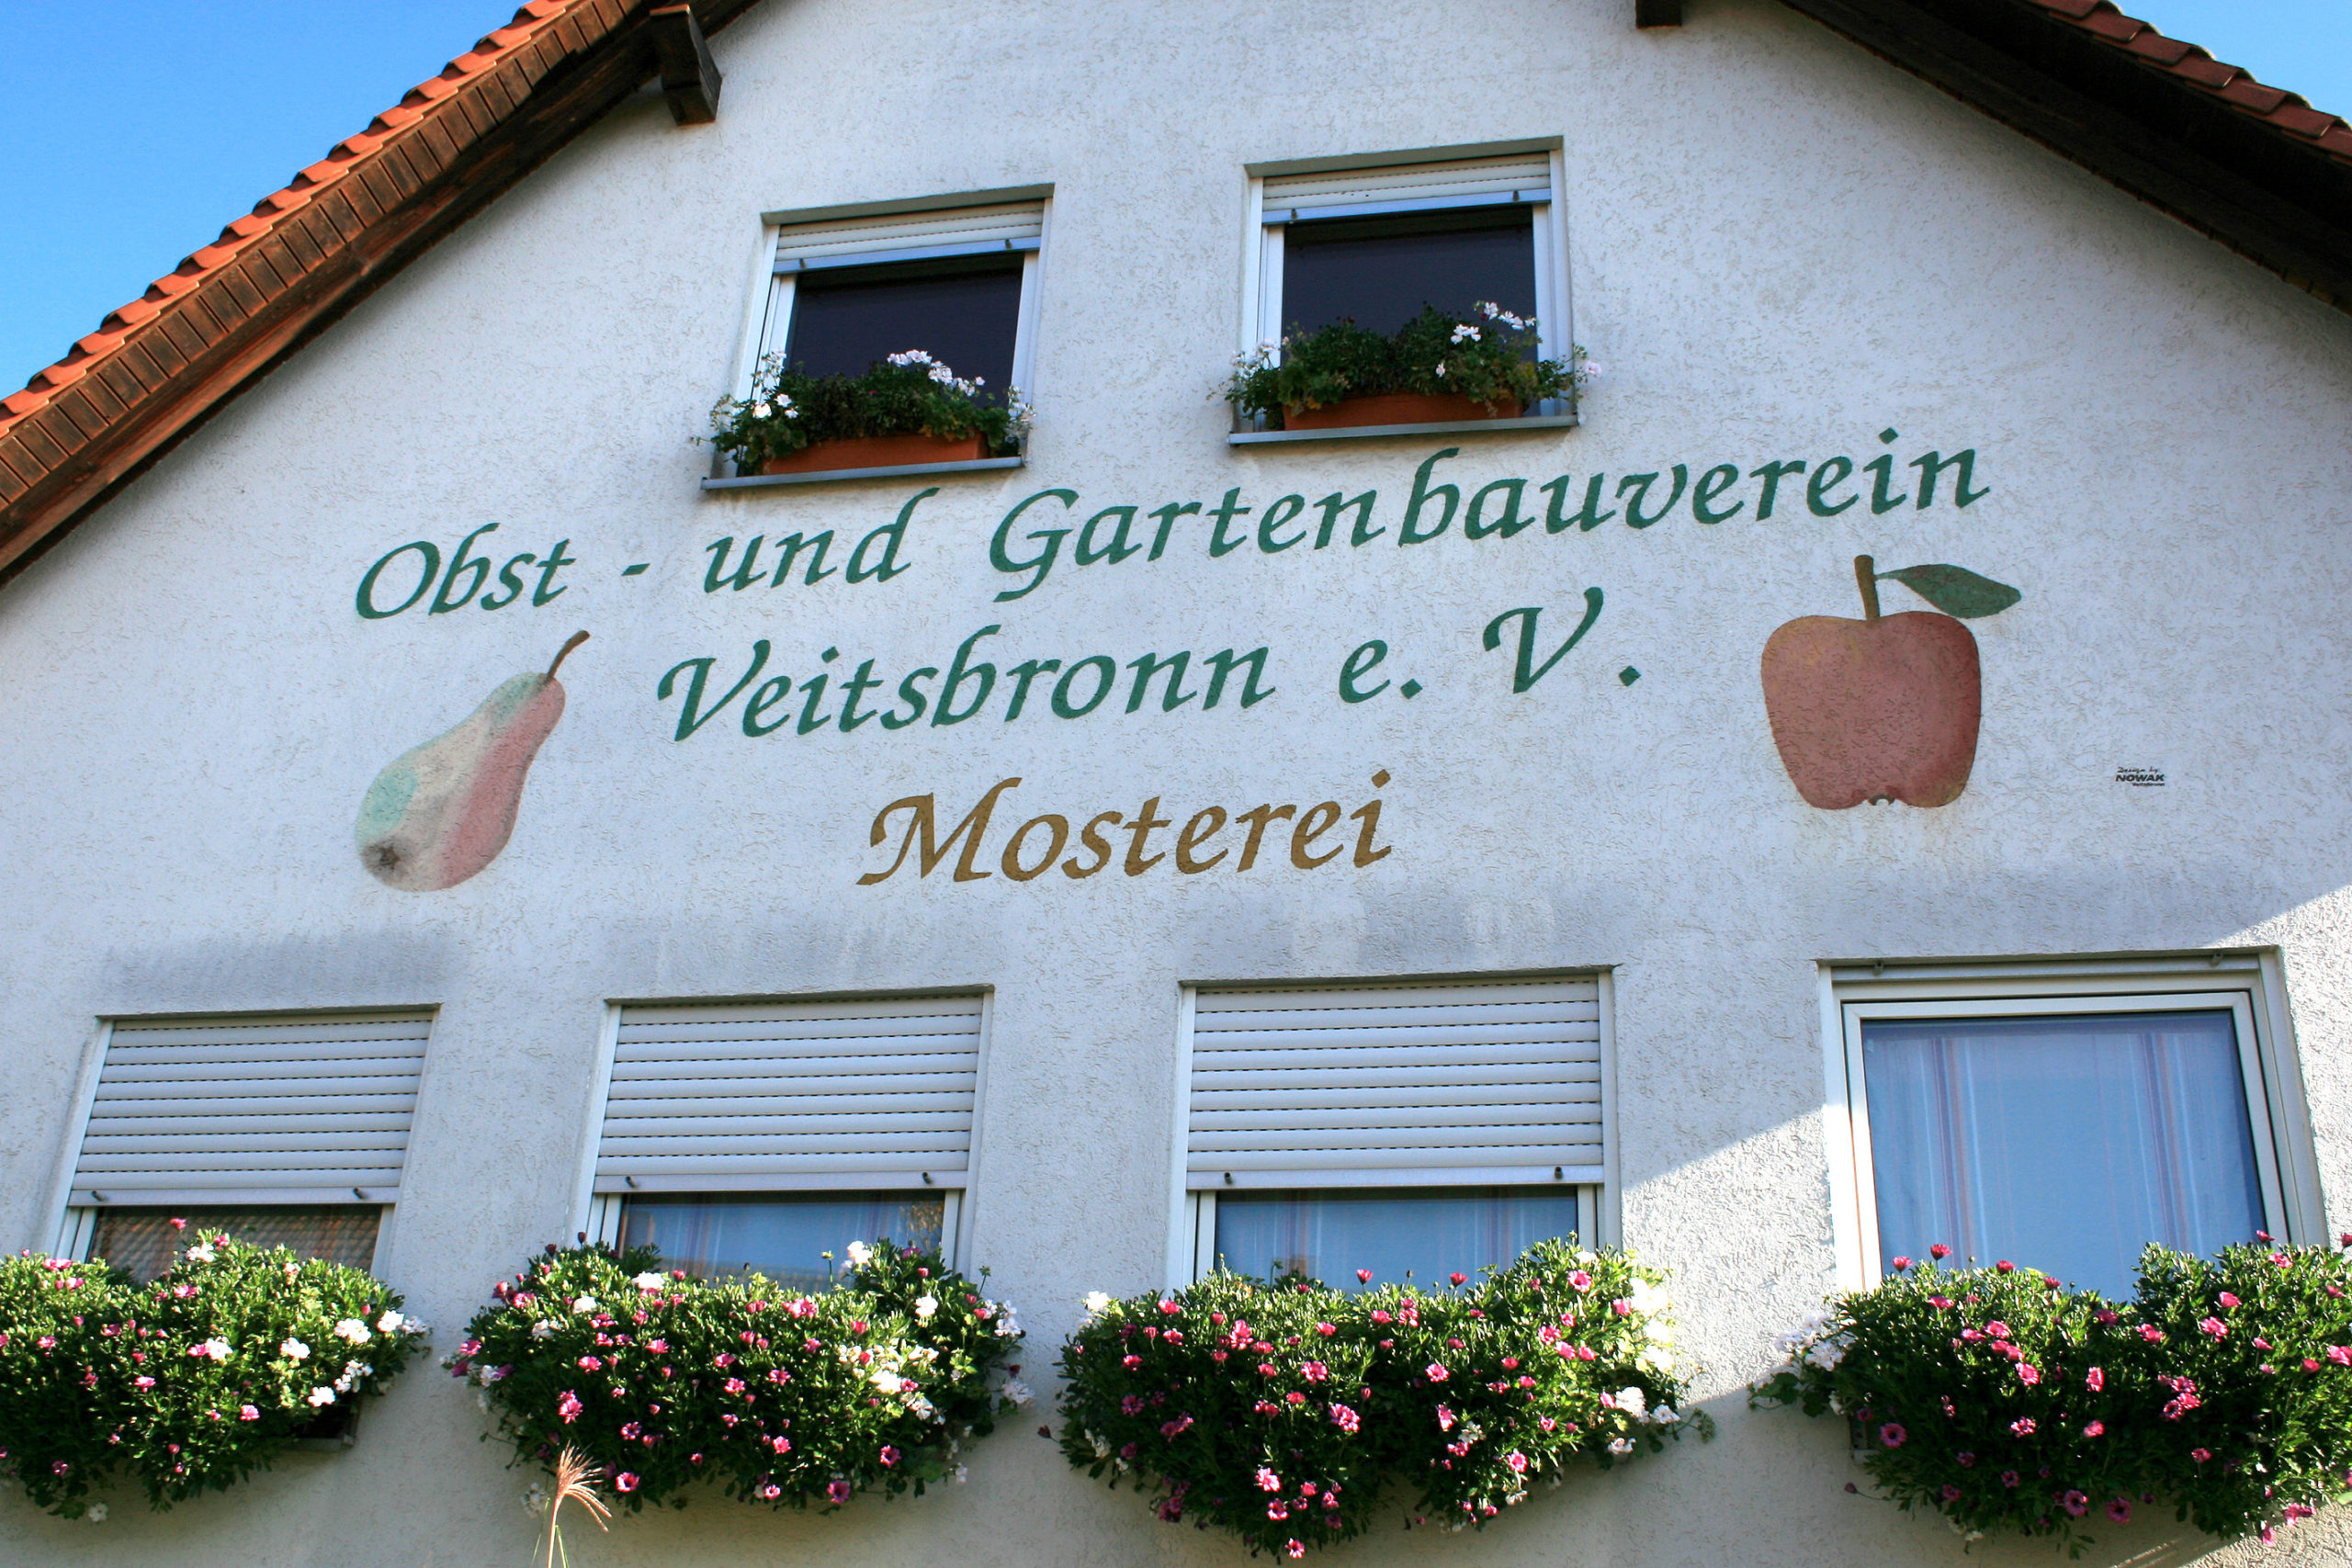 Gartenbauverein VB Mosterei